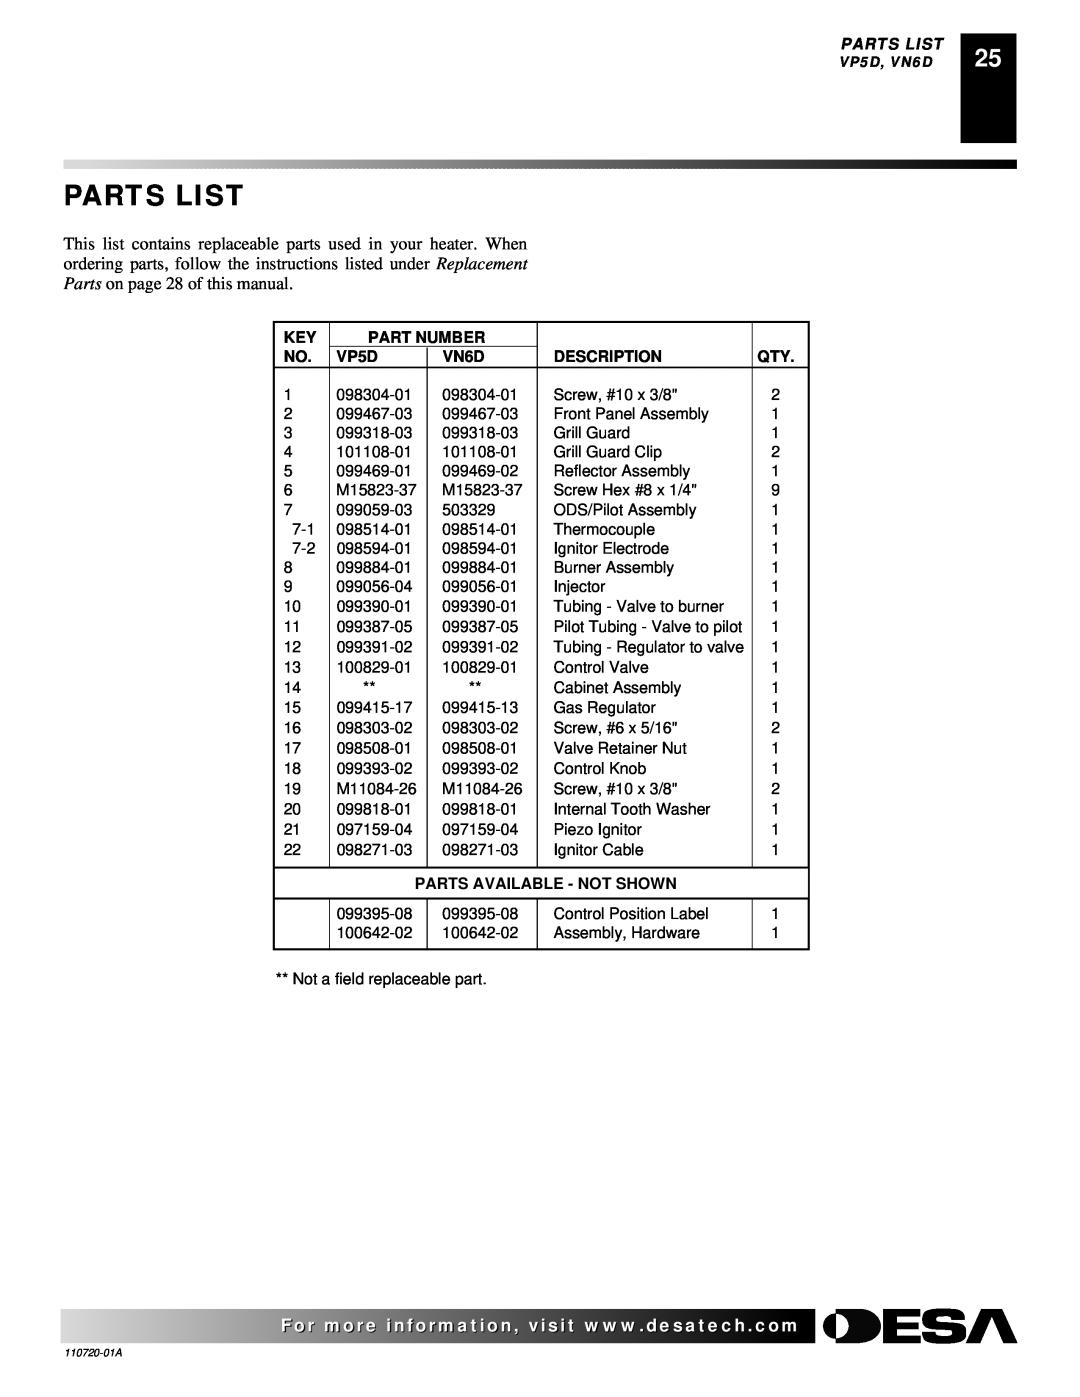 Desa VP1000BTA VN10A, VP10A Parts List, Part Number, VP5D, VN6D, Description, Parts Available - Not Shown 